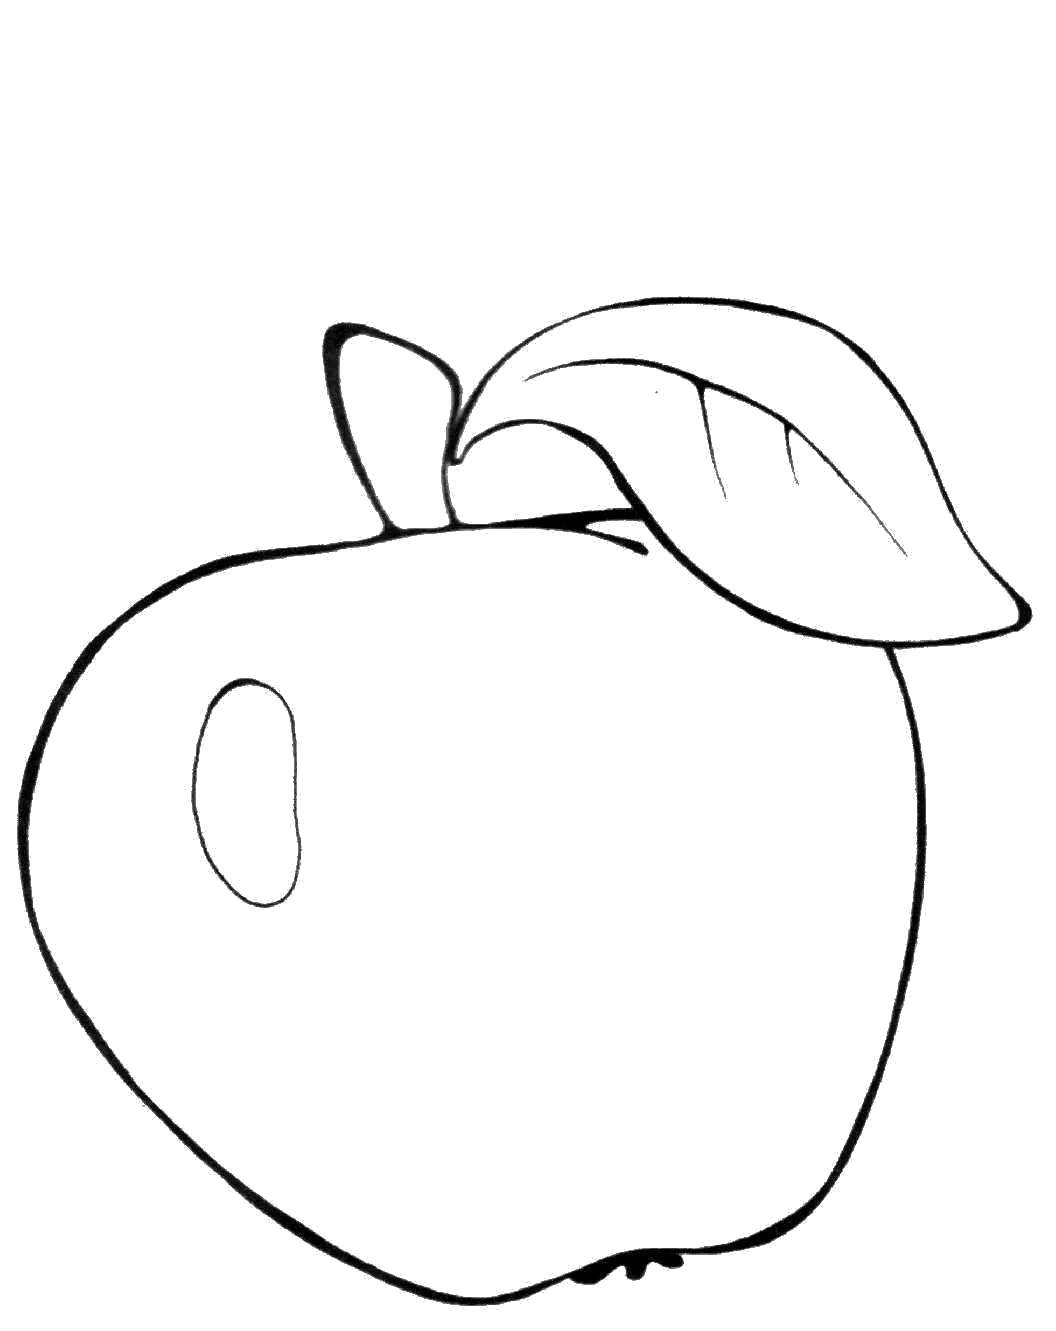 Раскрашенное изображение фруктов и яблока (фрукты, яблоко)